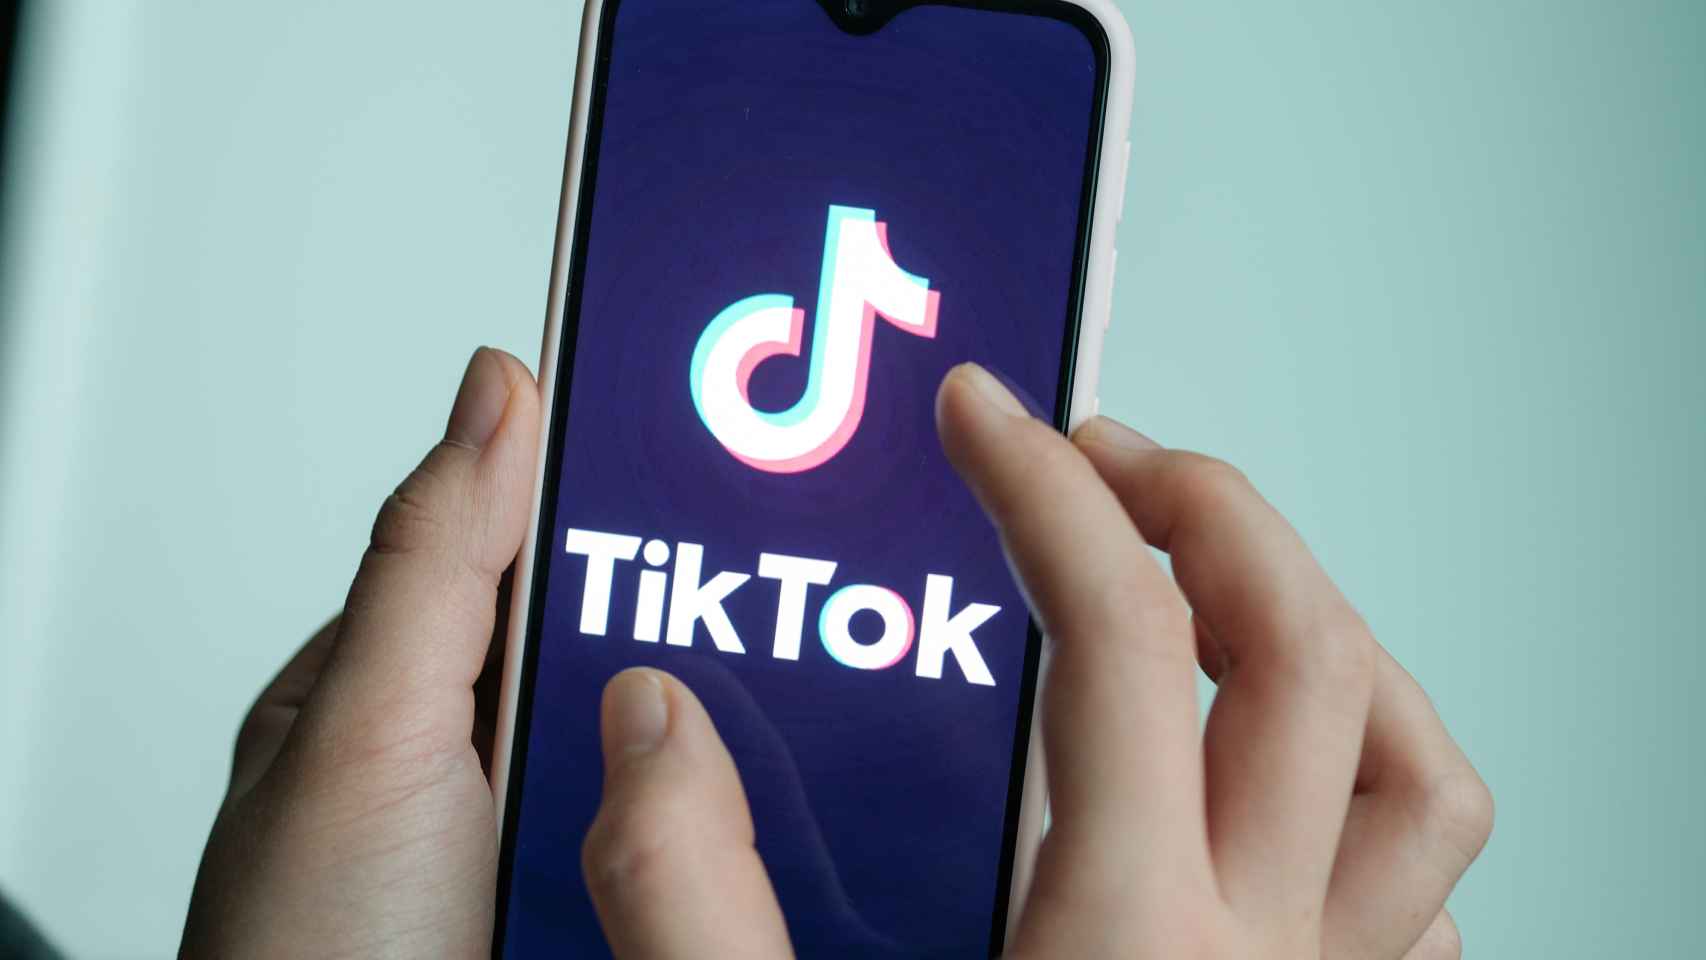 La aplicación TikTok en un teléfono móvil.